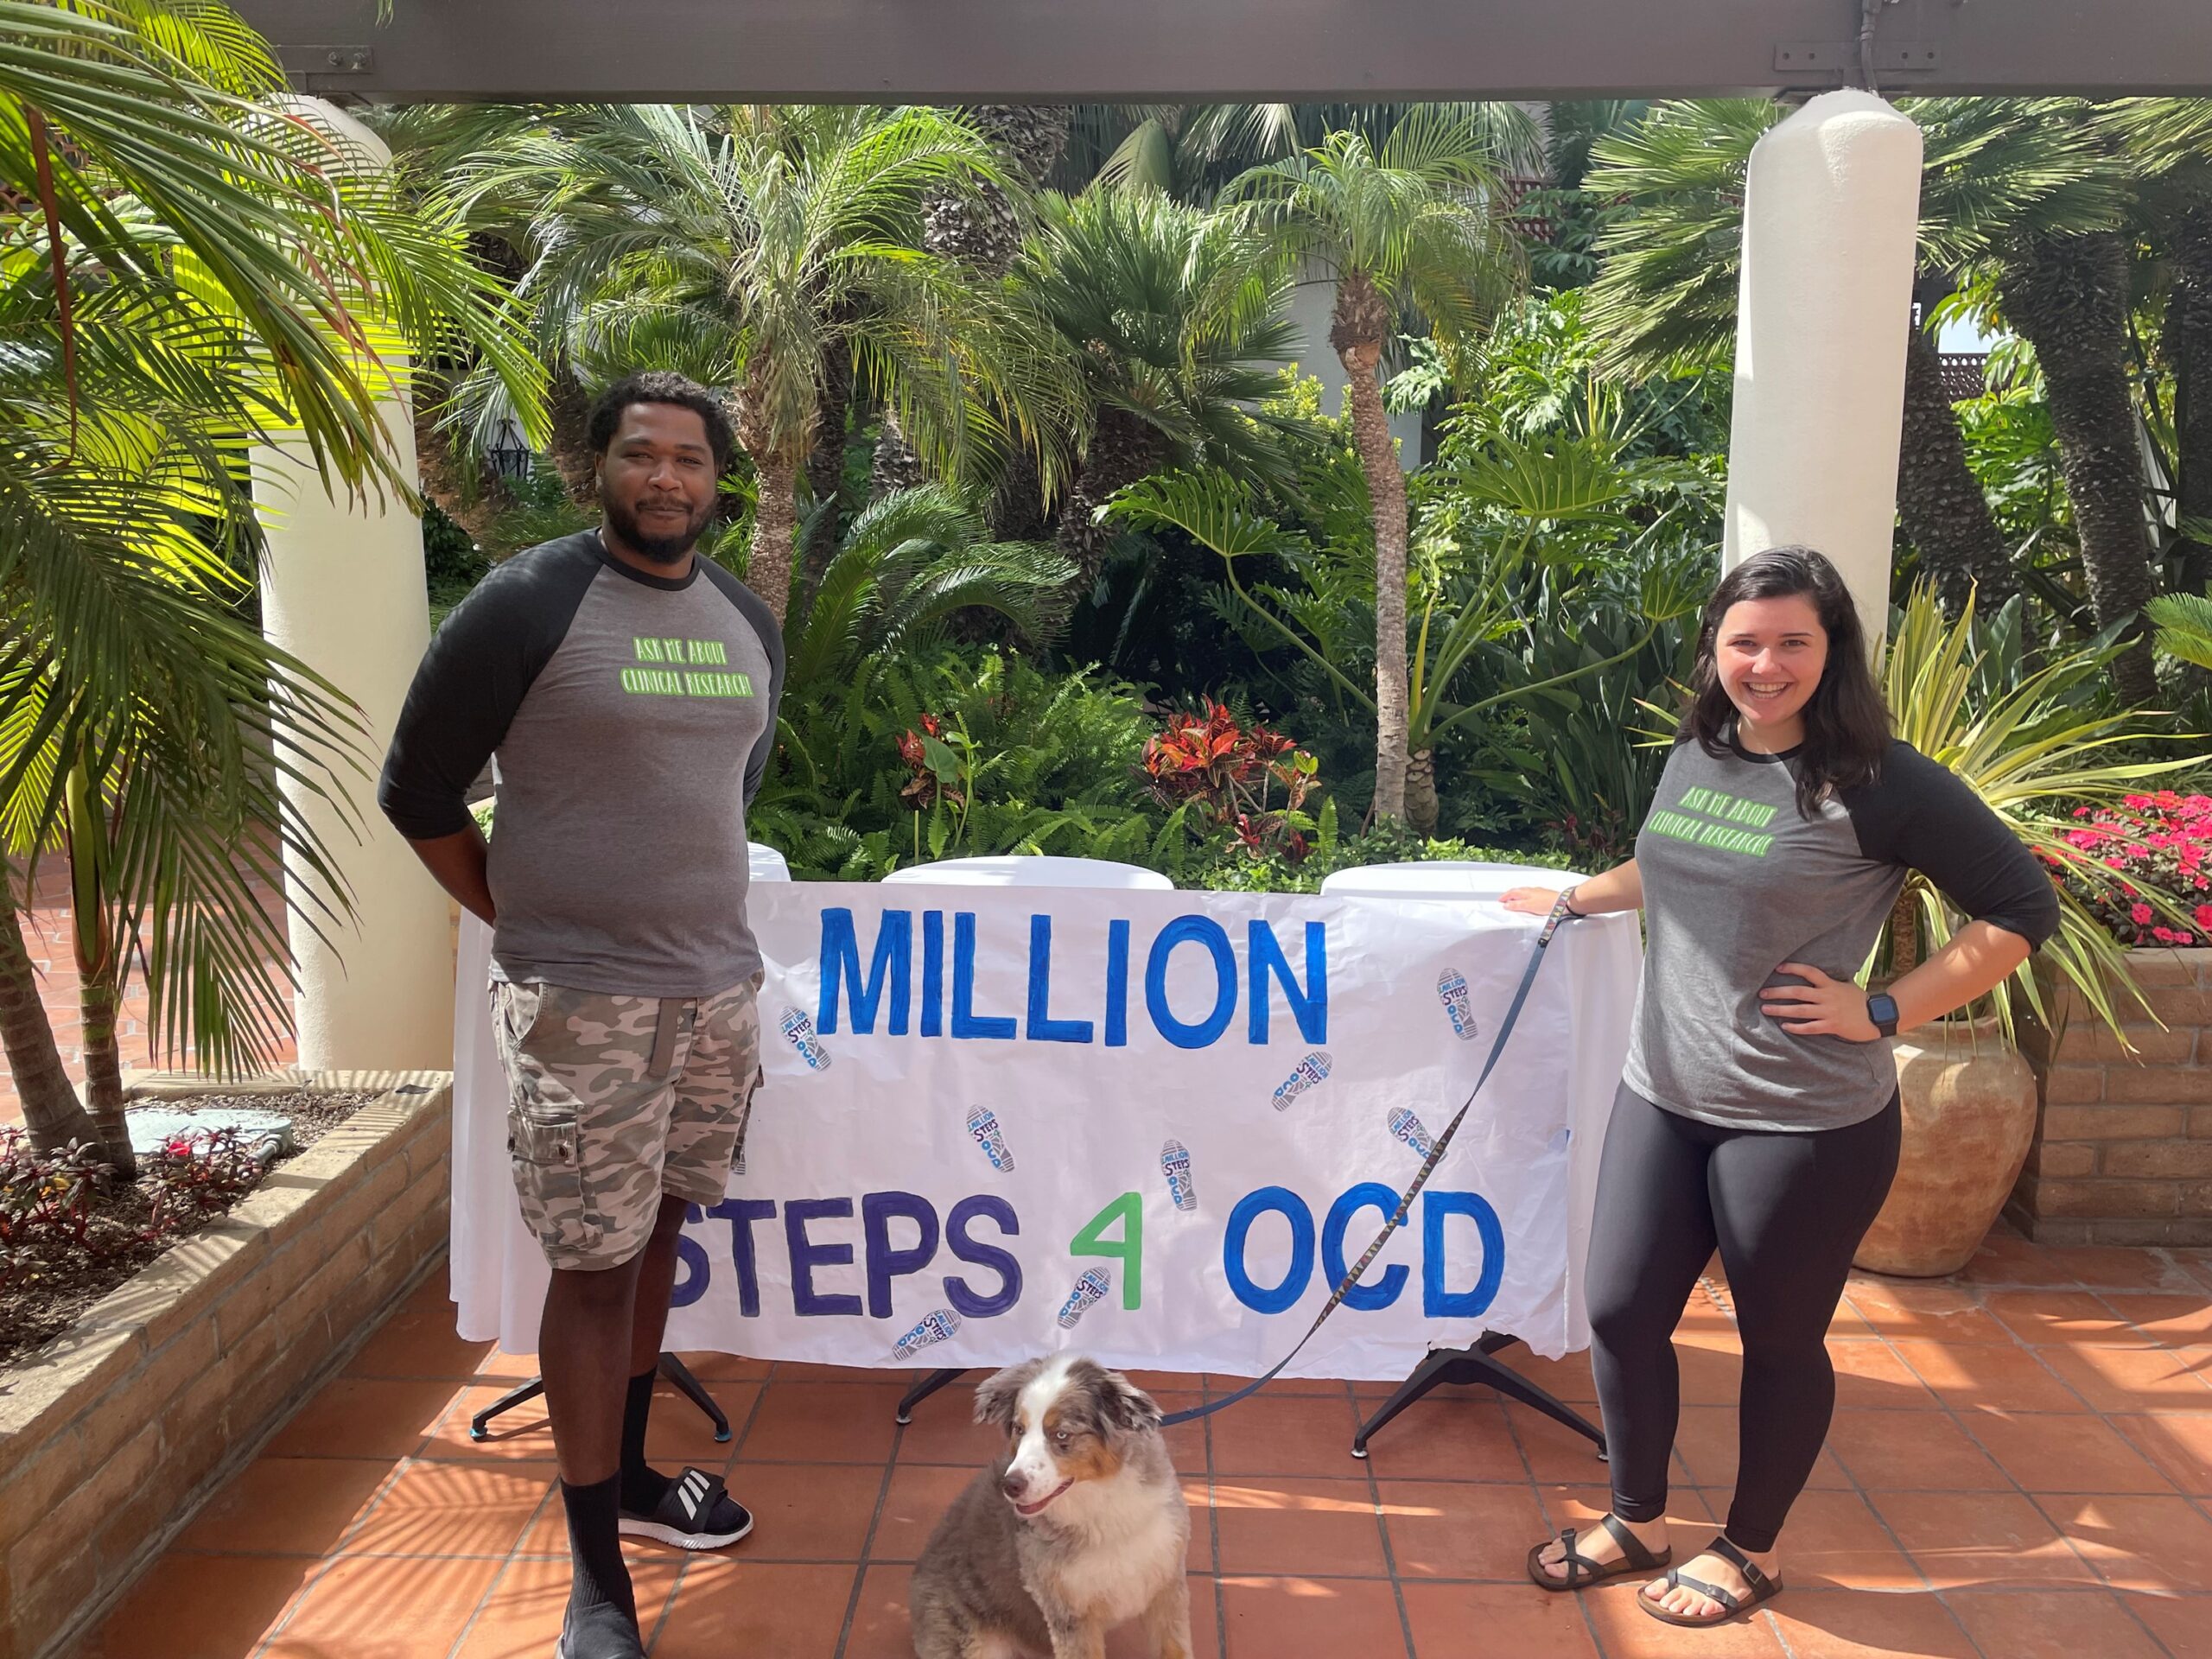 1 Million Steps for OCD Event 2021